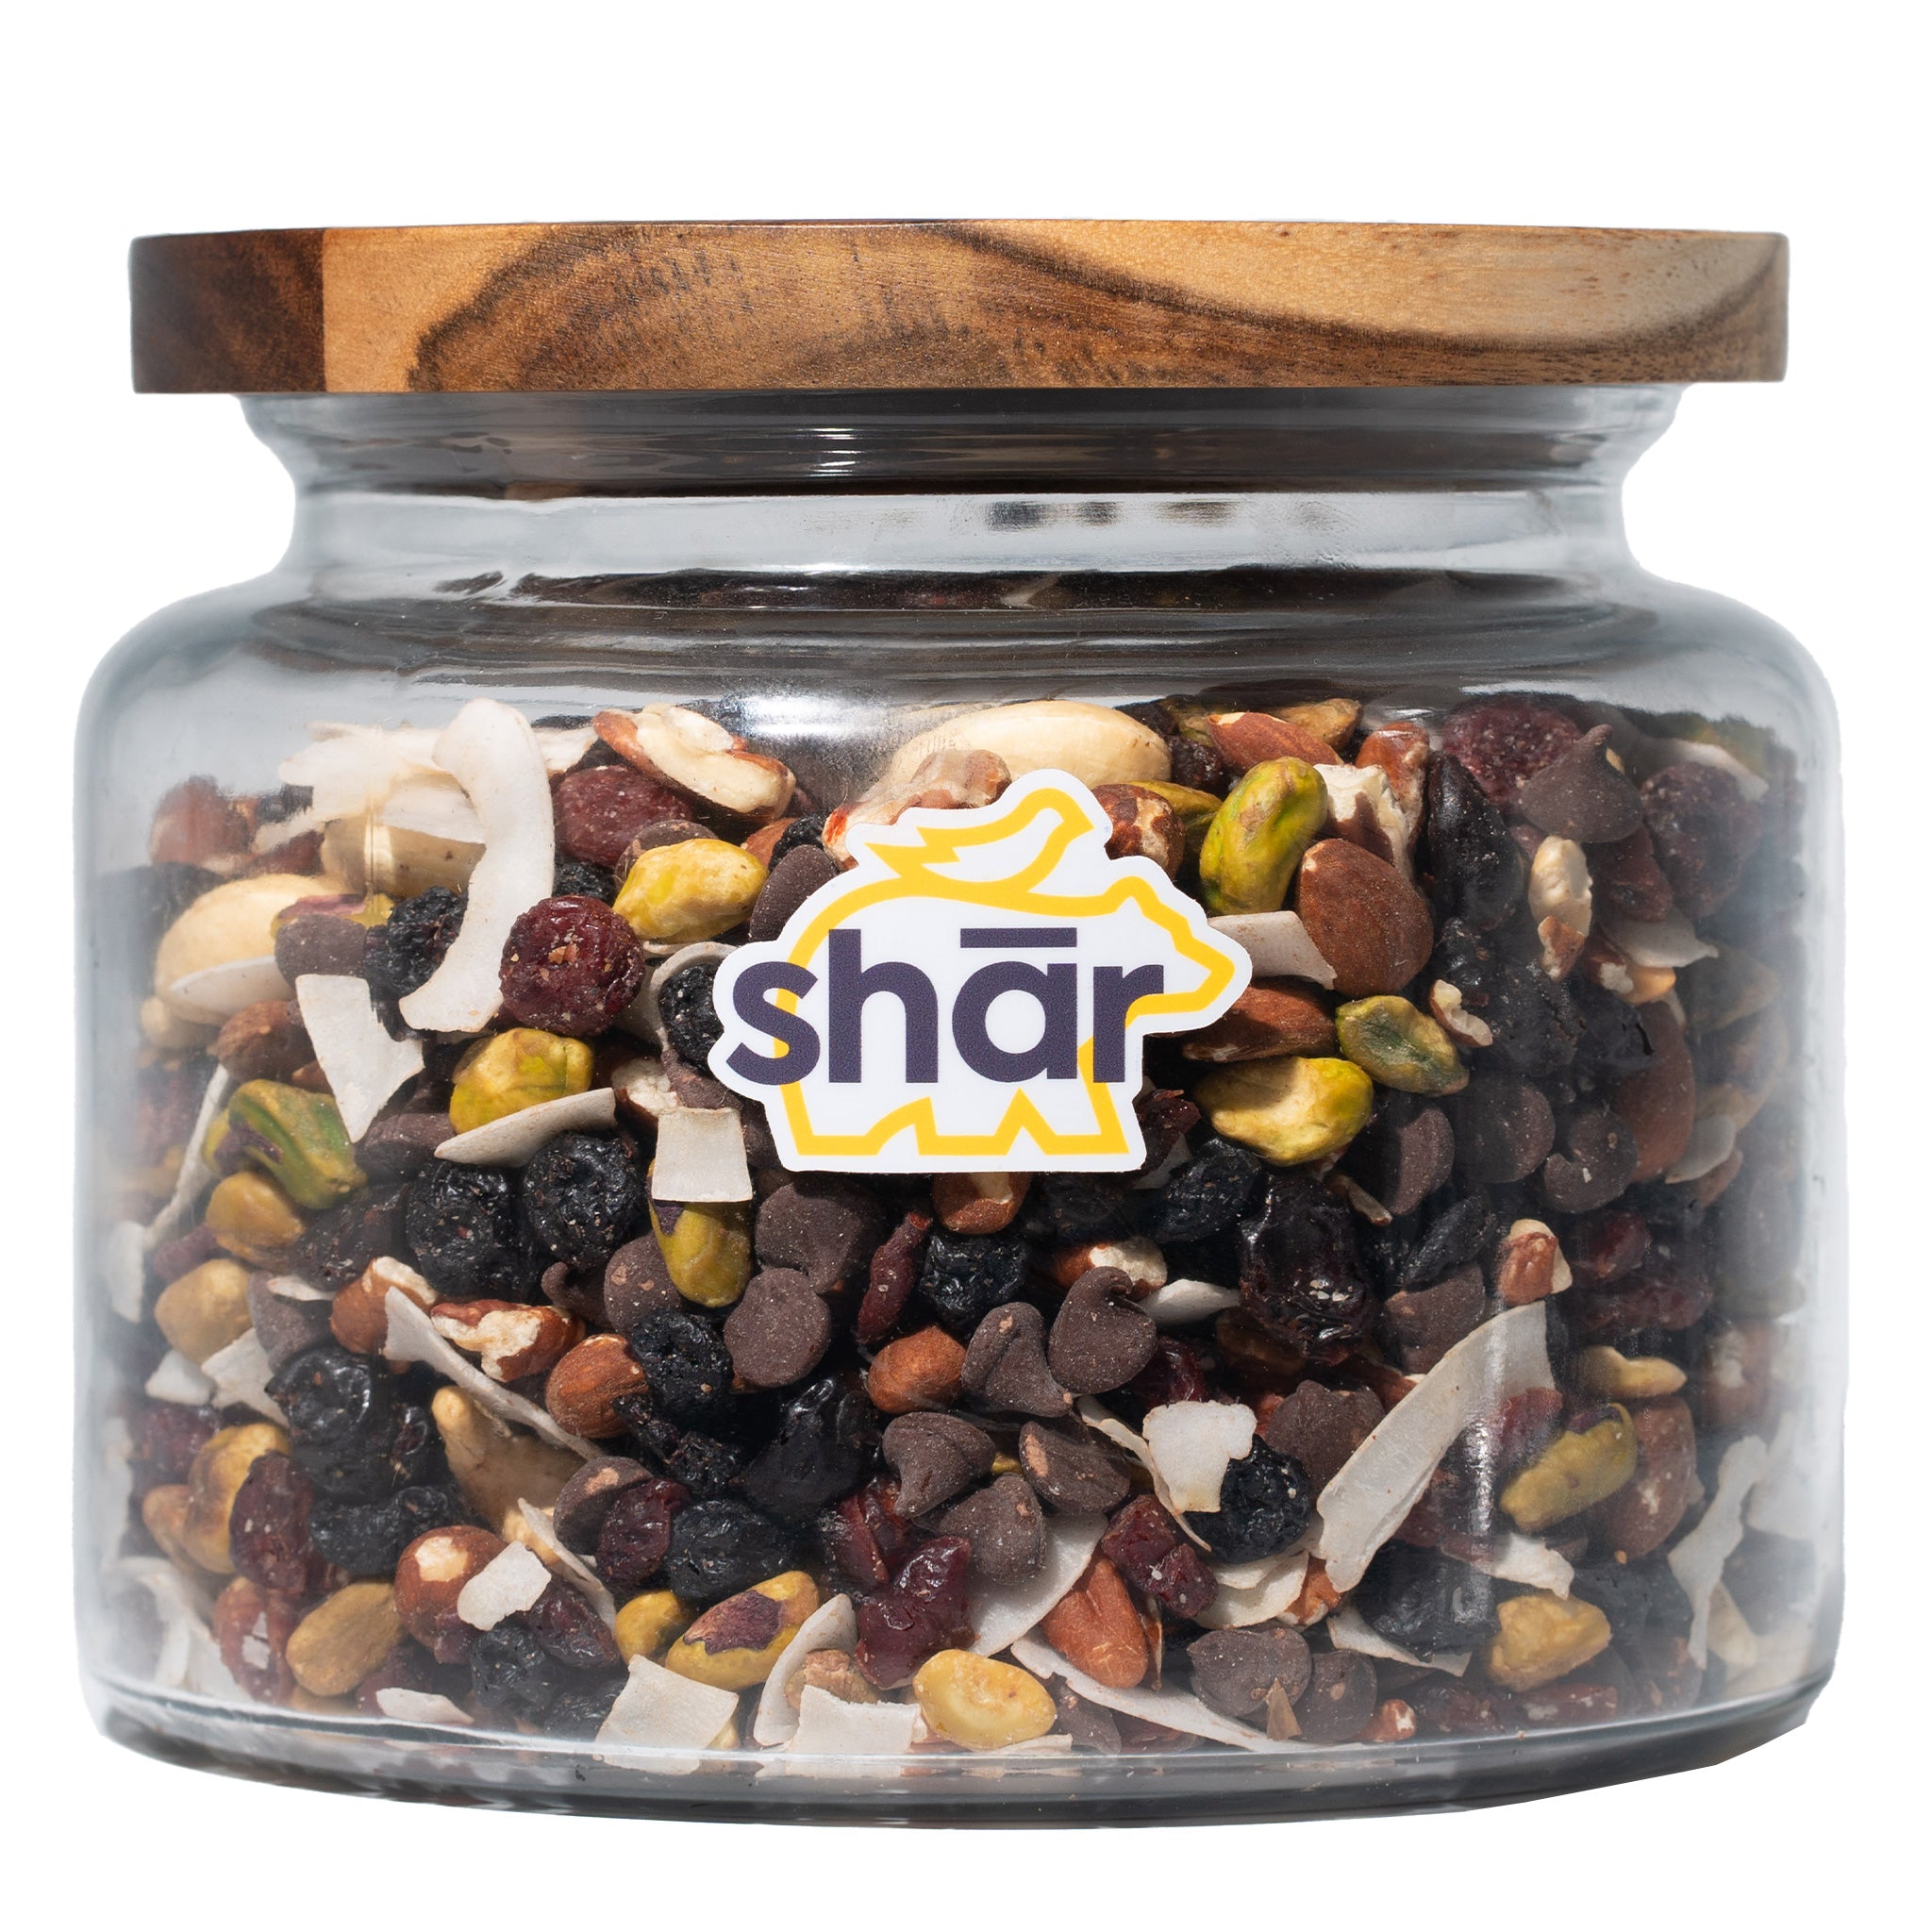 2.75 lb refillable shār jar – Original